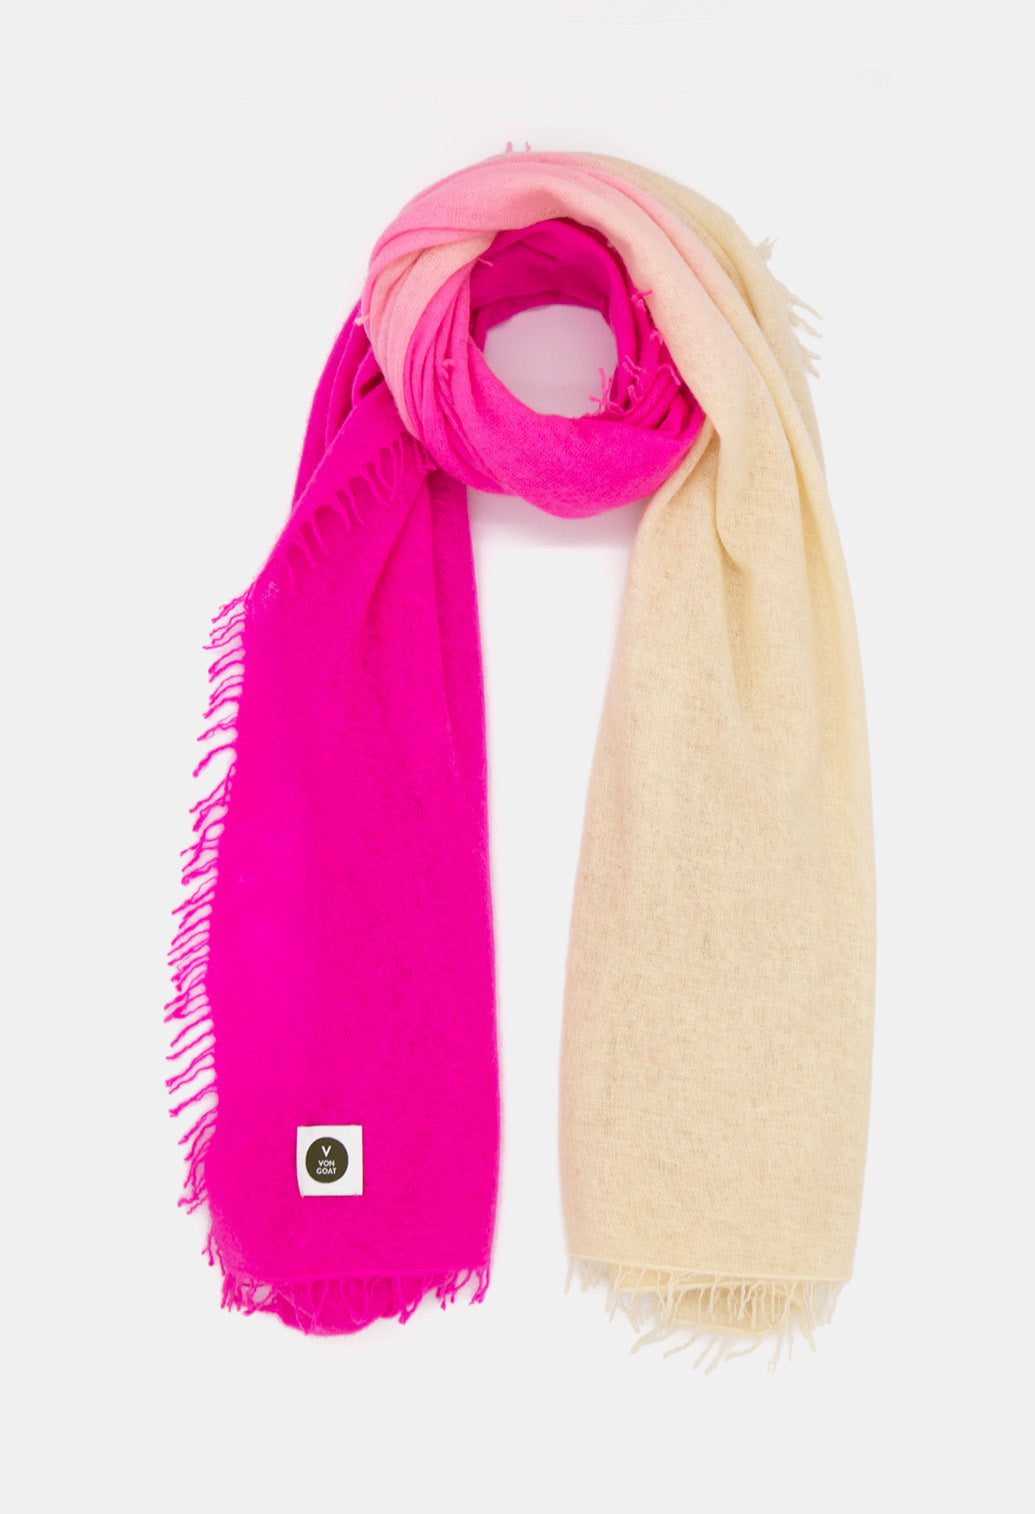 V Von Goat Kaschmir-Schal mit Fransen im Tiedye-Stil in den Farben Neon Pink und Beige aus reiner Cashmere-Wolle auf weißem Untergrund.